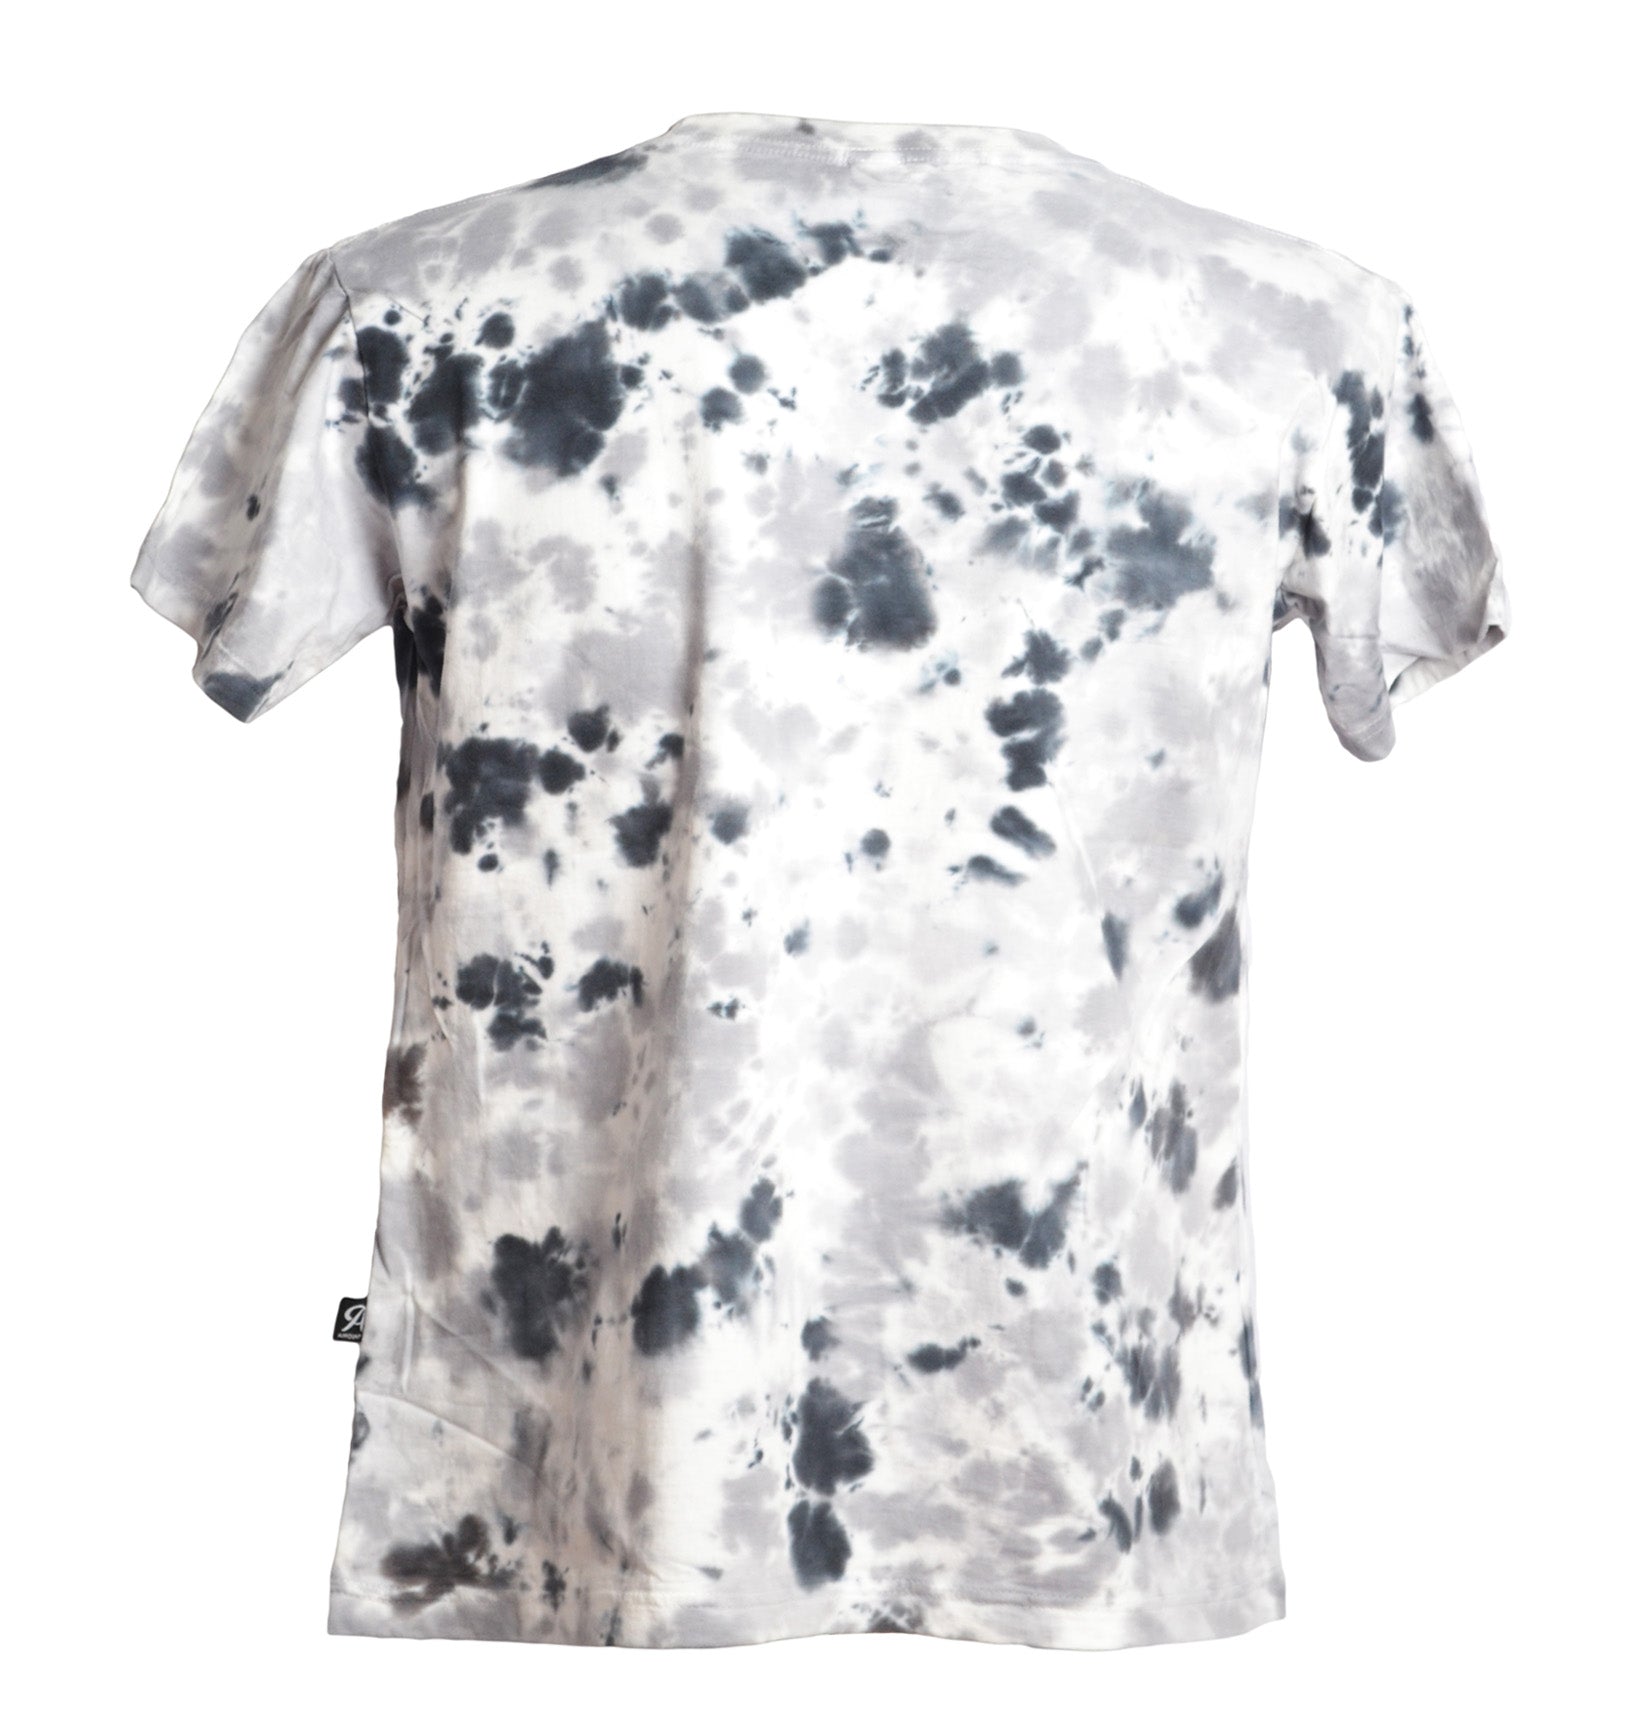 Vus dos t-shirt tie and dye effet taches blanc et gris - GL BOUTIK